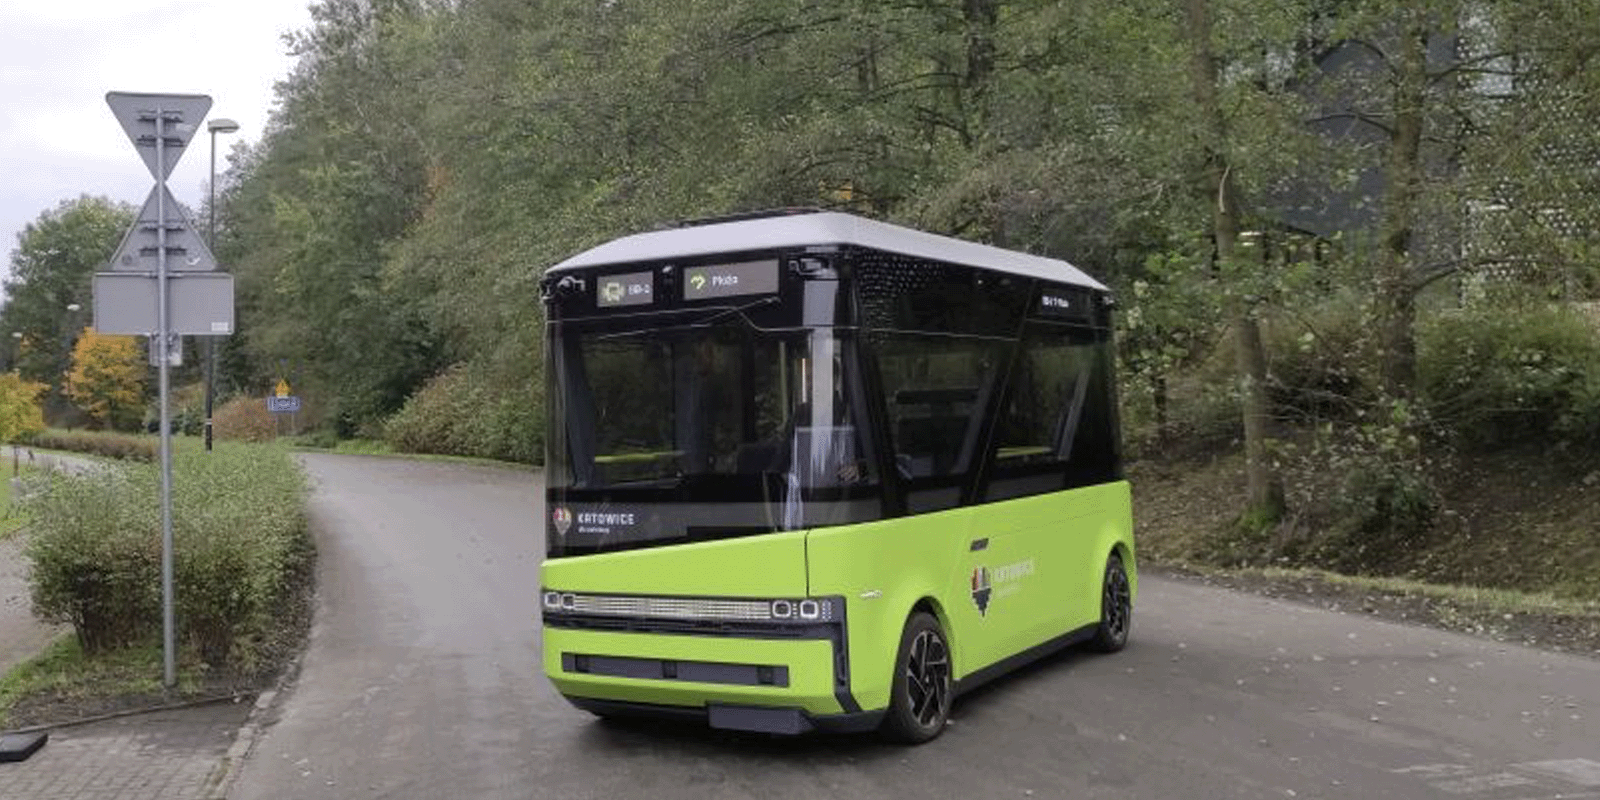 Pierwszy polski autonomiczny minibus elektryczny na ulicach Katowic Technologie MEDIARUN COM BUS AUTOMICZNY KATOWICE V2